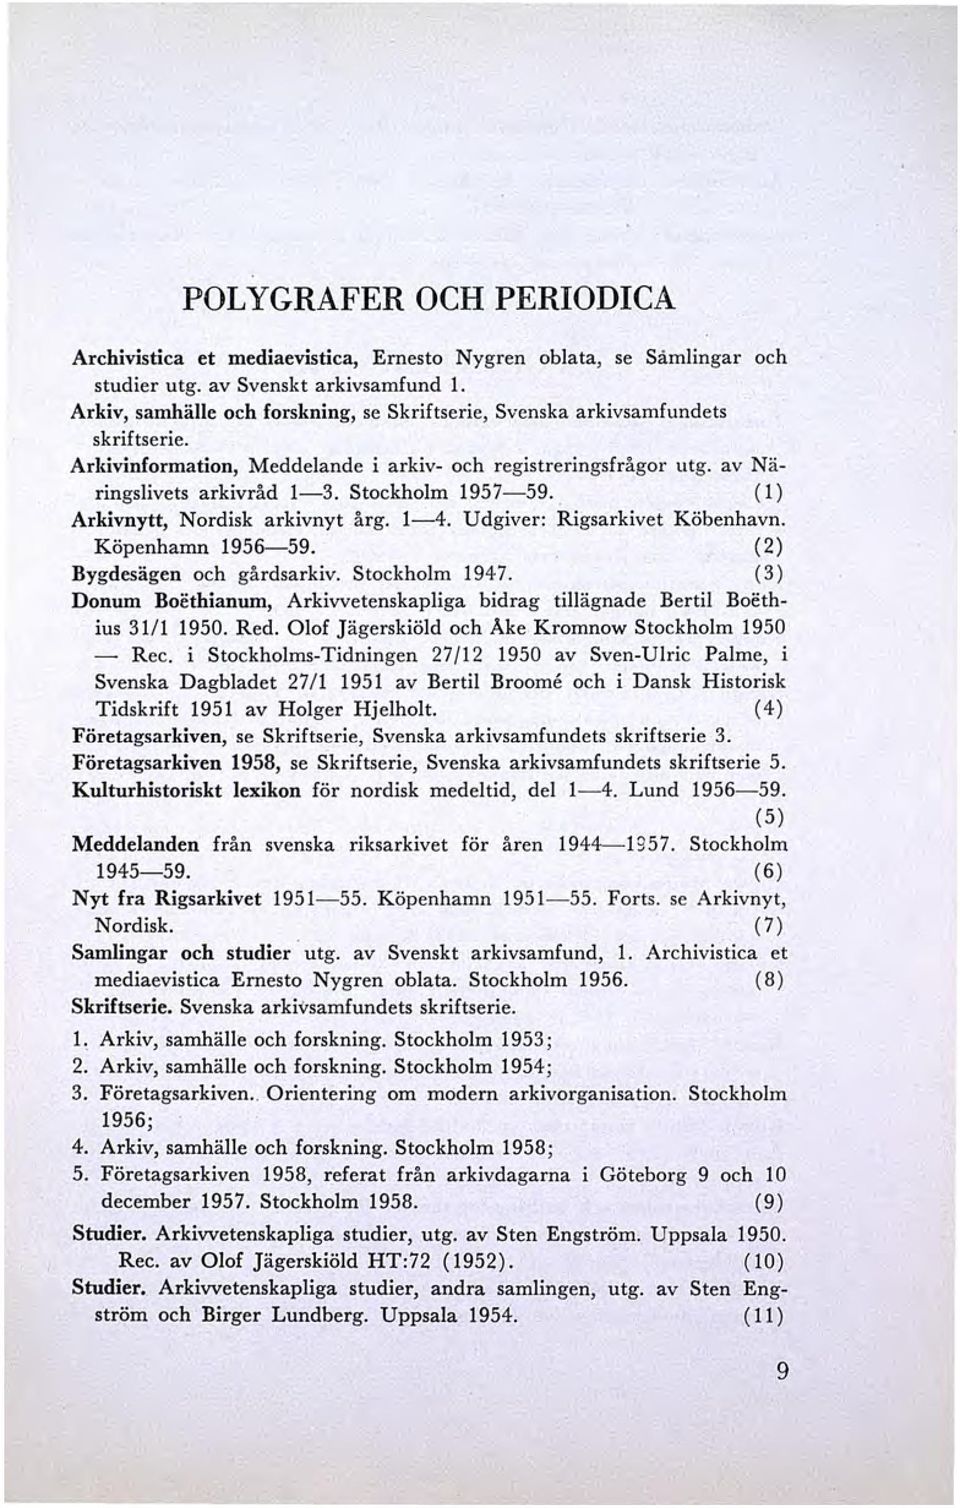 (l) Arkivnytt, Nordisk arkivnyt årg. 1-4. Udgiver: Rigsarkivet Köbenhavn. Köpenhamn 1956-59. (2) Bygdesägen och gårdsar kiv. Stockholm 1947.